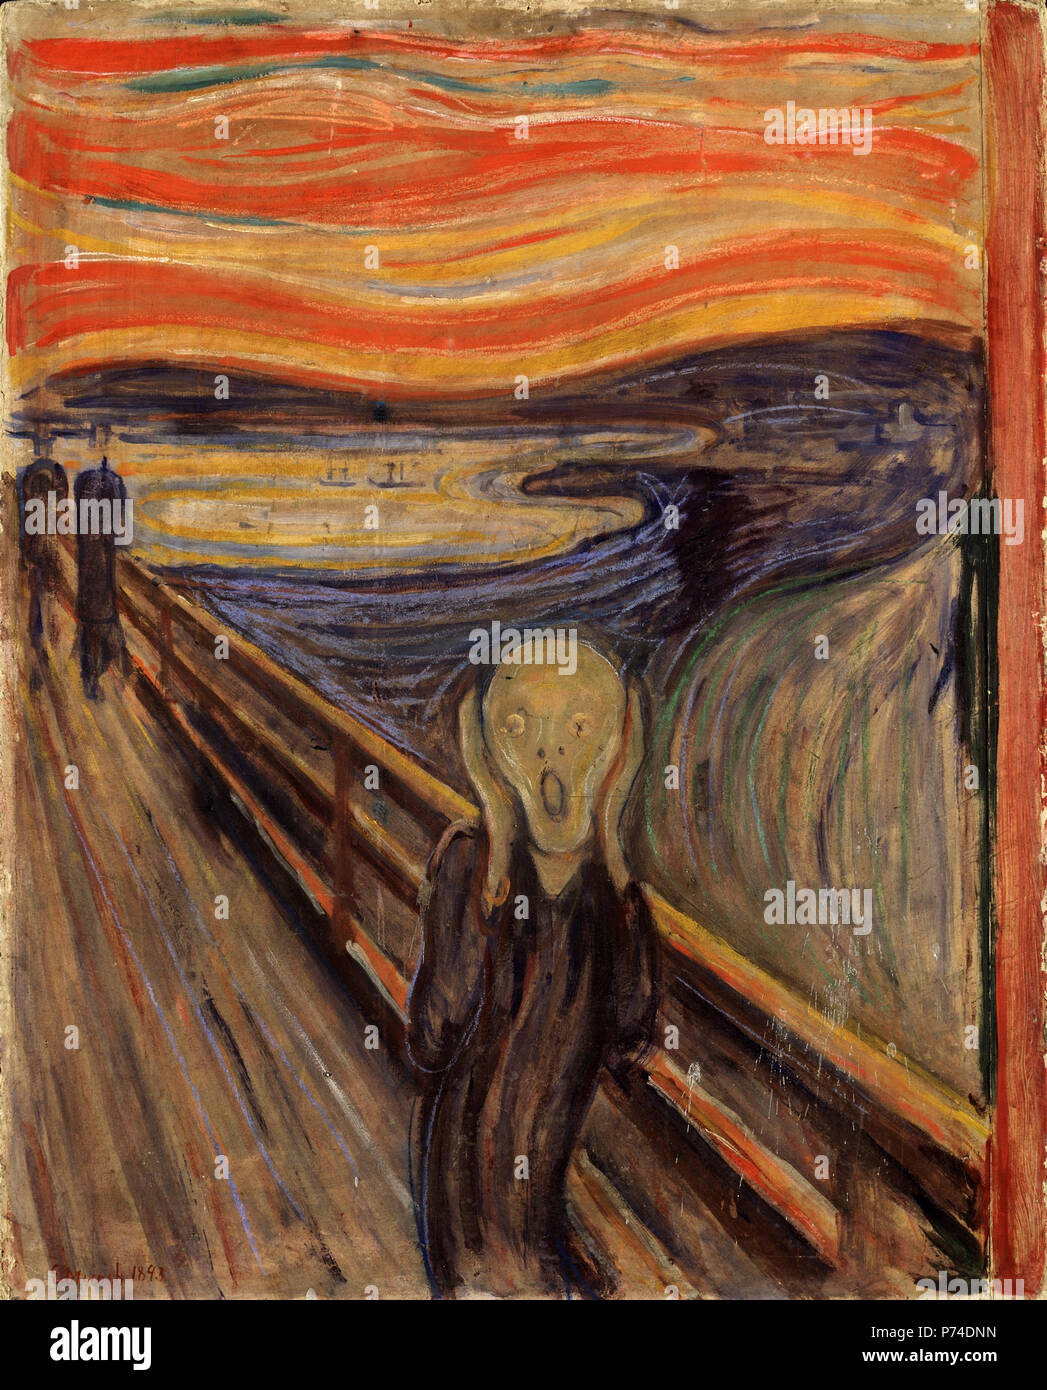 49 The Scream by Edvard Munch, 1893 - Nasjonalgalleriet Stock Photo